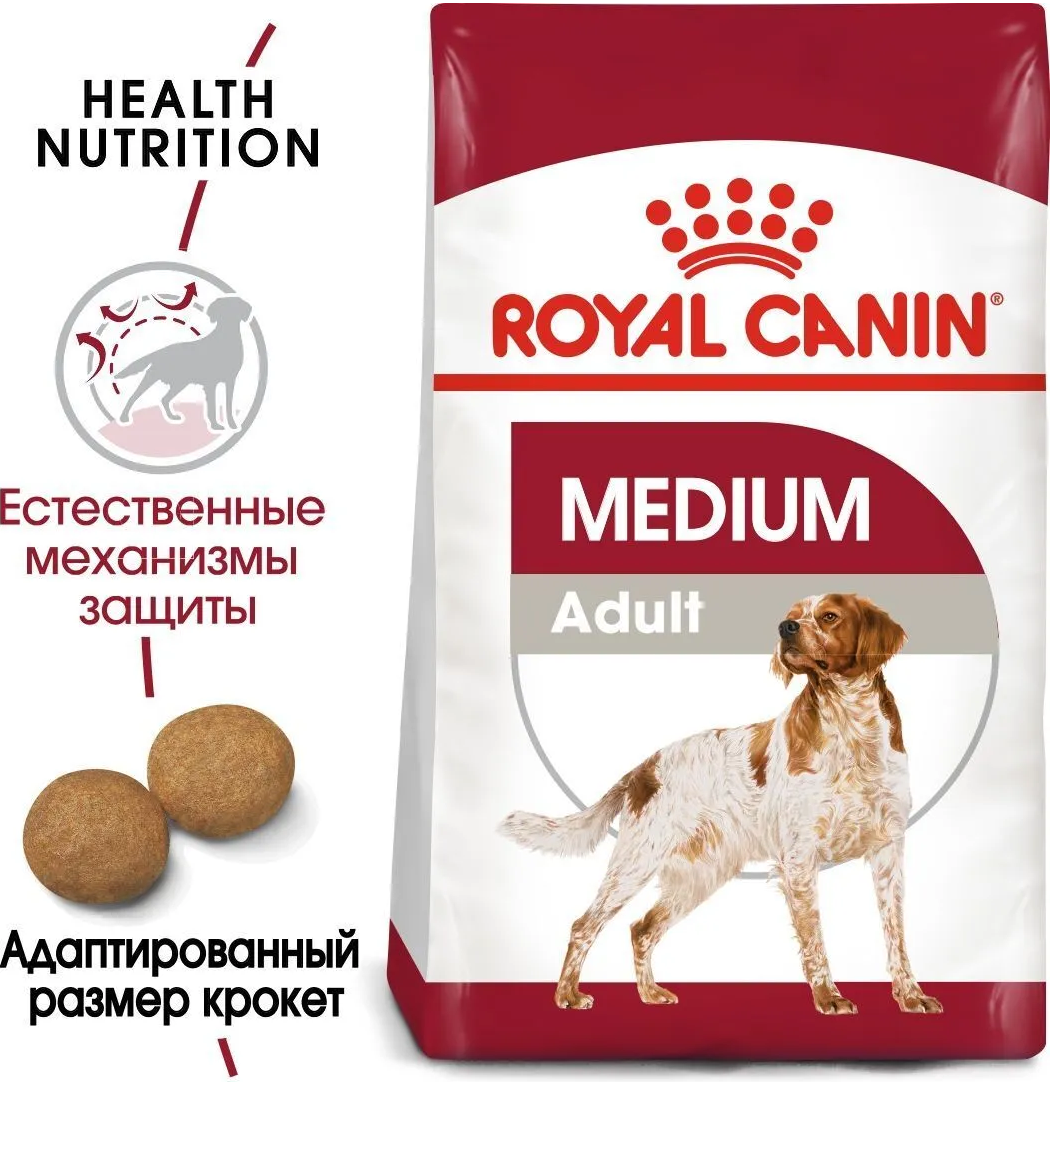 Сухой корм для собак средних пород (весом от 11 до 25 кг) Royal Canin MEDIUM Adult 3 кг